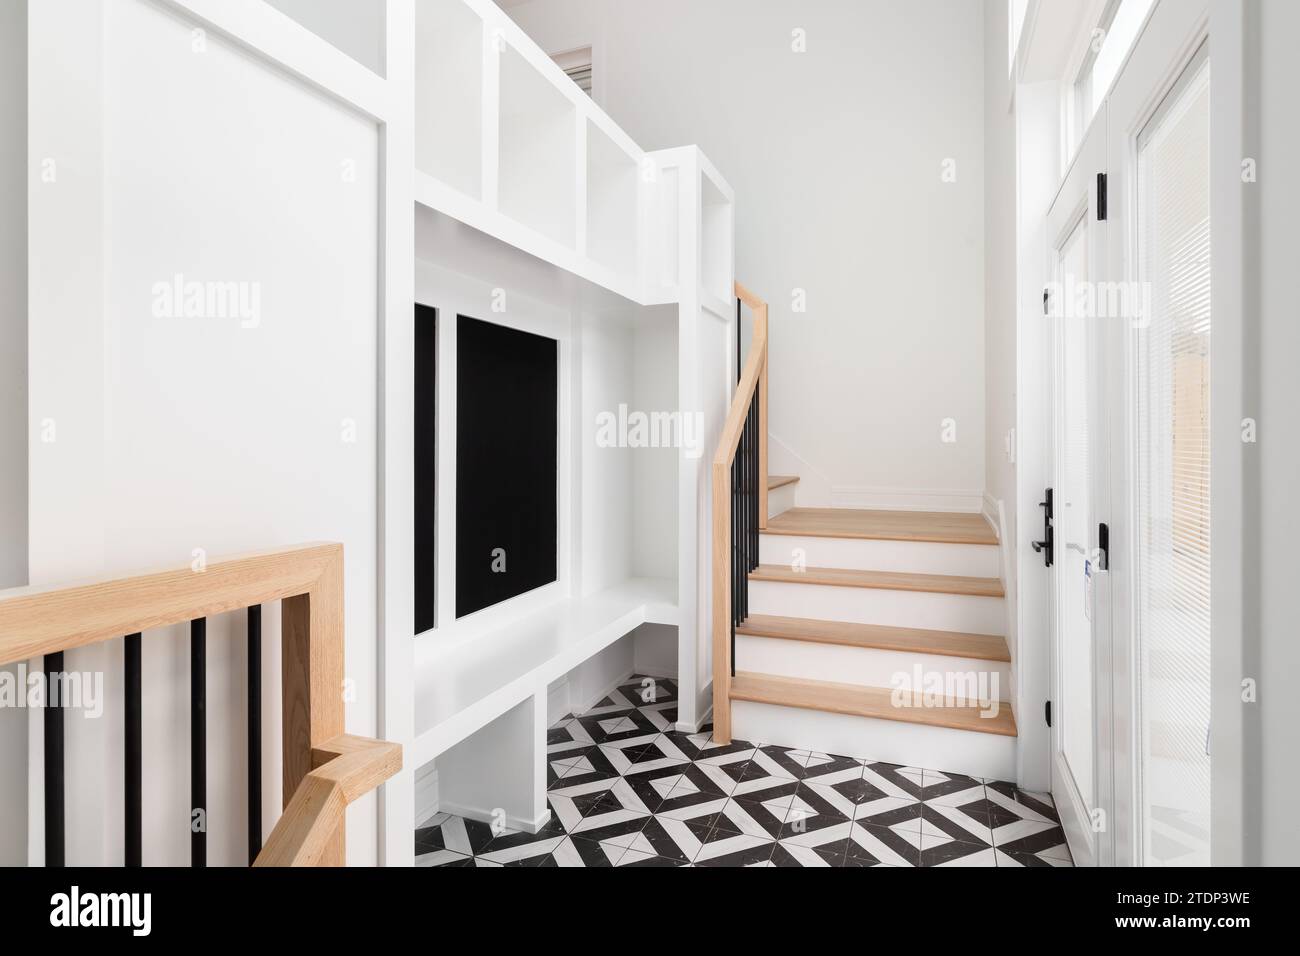 Un grand foyer avec une unité de rangement blanche, banc blanc, escalier et balustrade en chêne blanc, et un sol carrelé noir et blanc. Banque D'Images